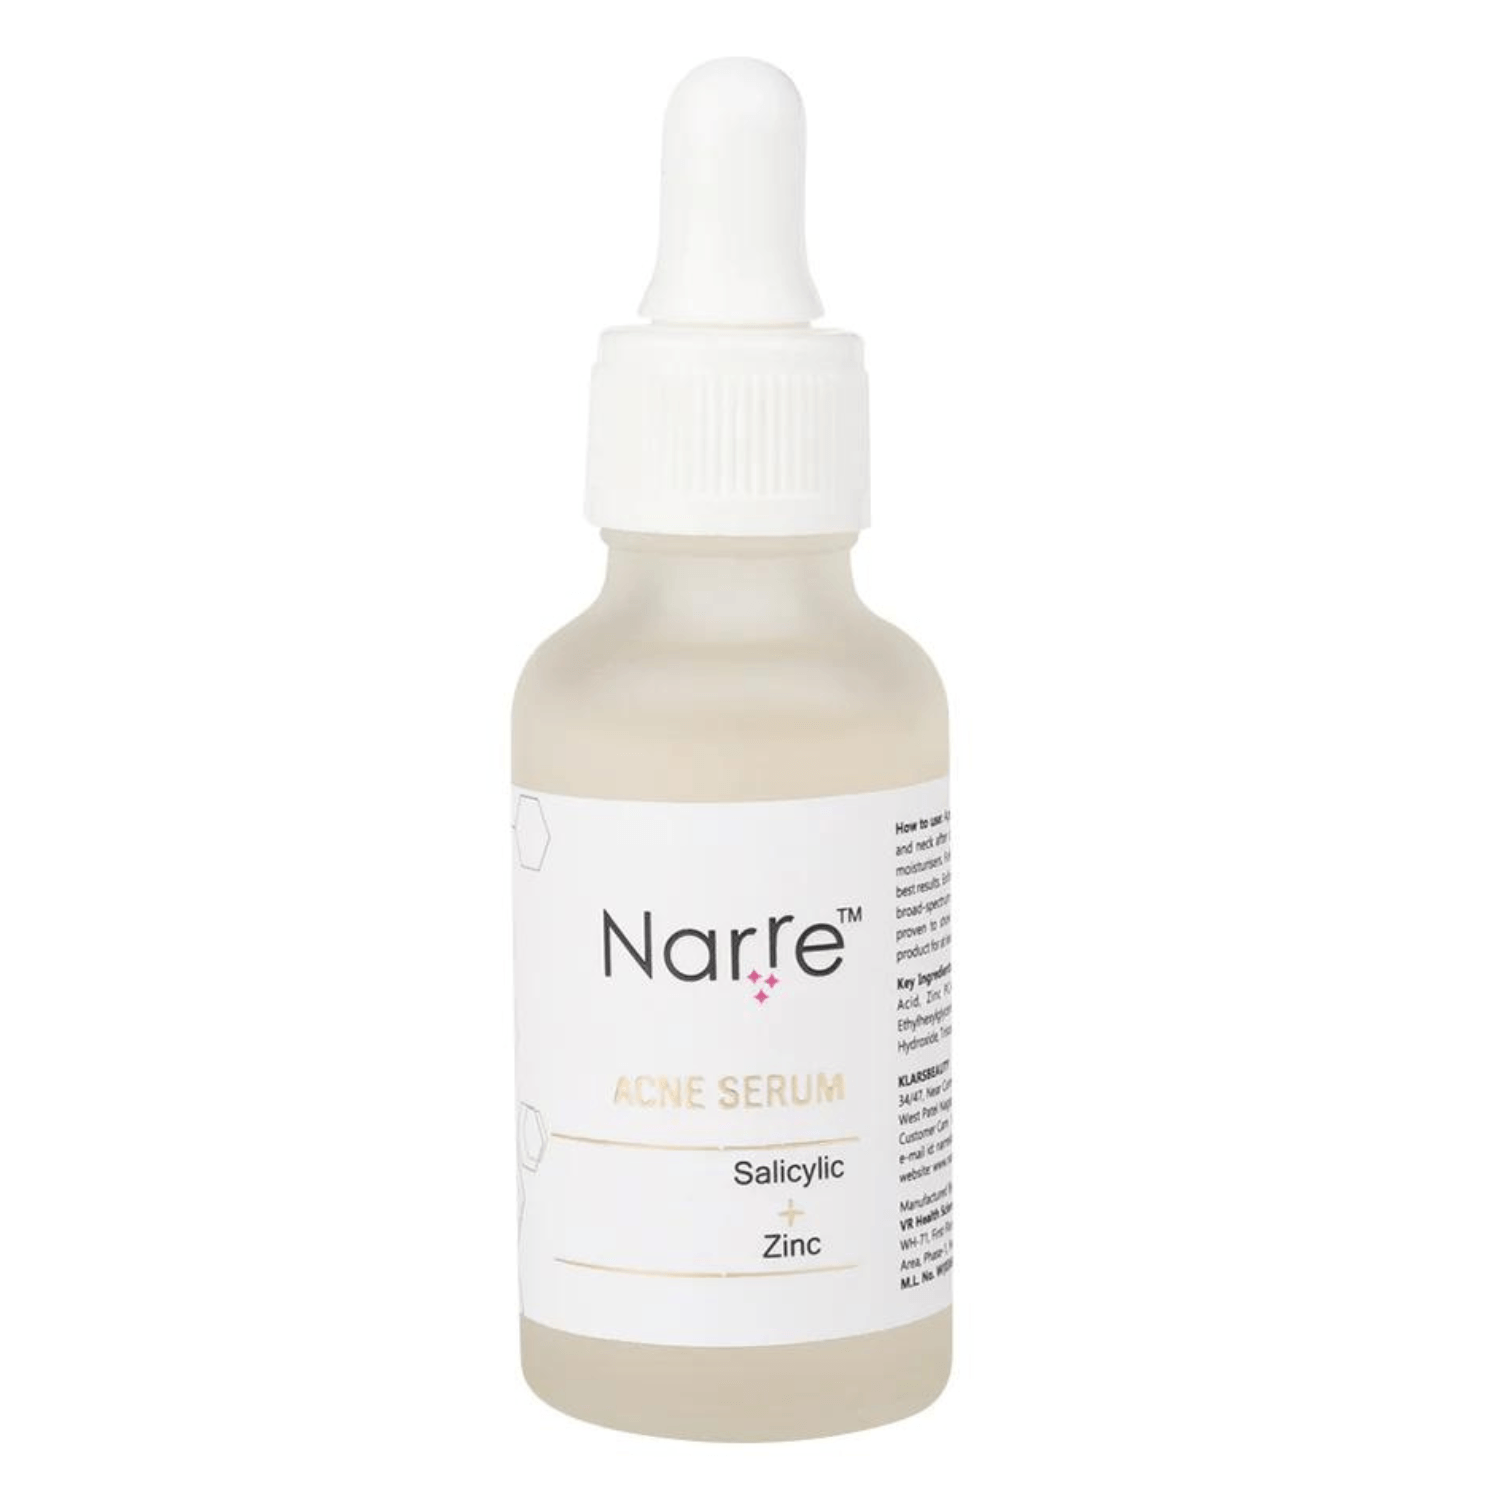 Narre Acne Serum